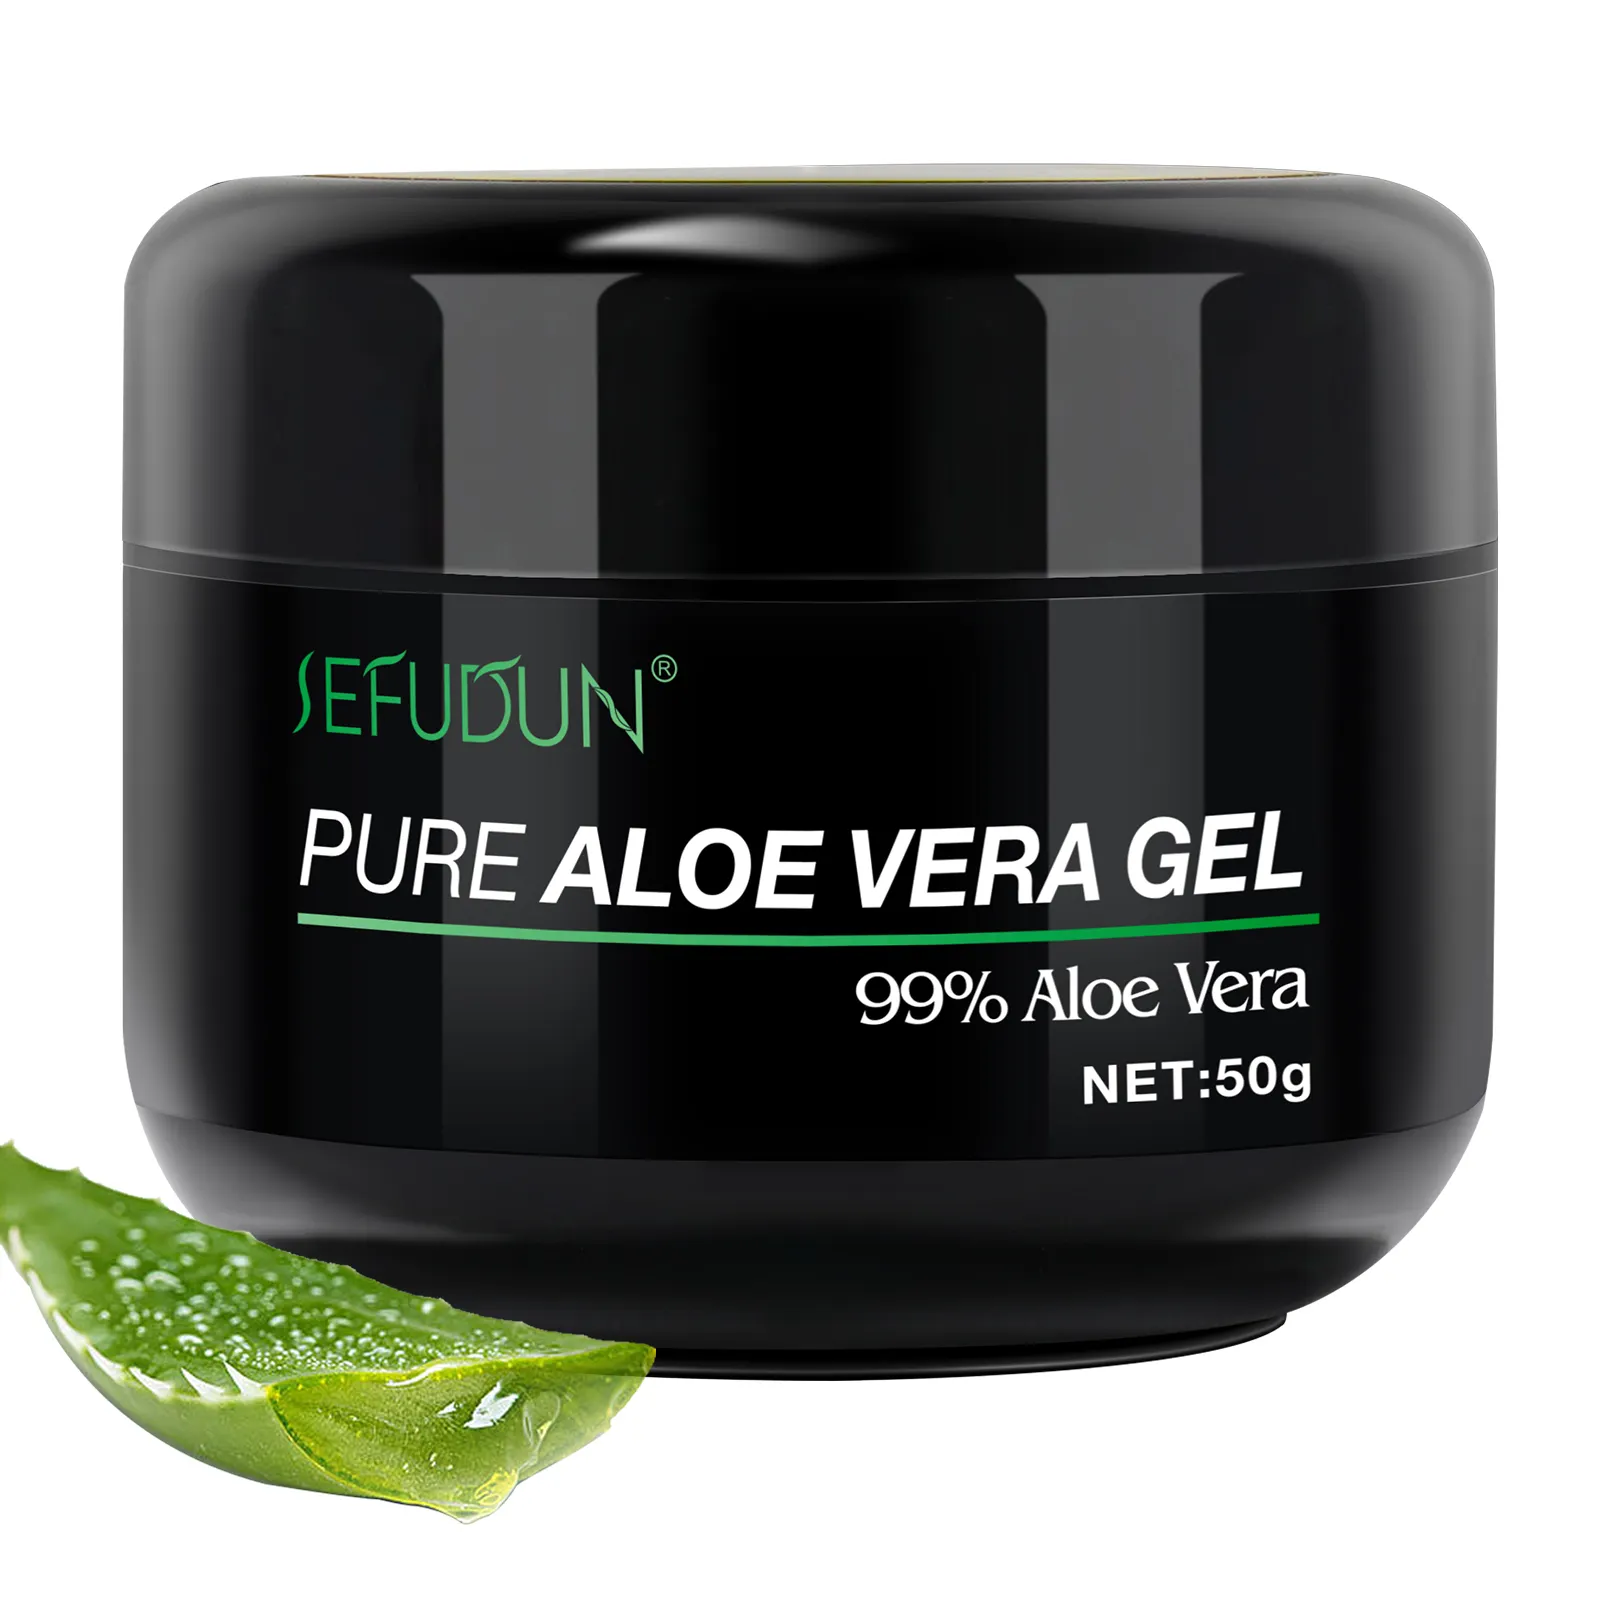 SEFUDUN cilt aydınlatma yumuşatma jel Aloe Vera yüz kremi doğal organik 99% saf Aloe Vera jel yüz bakımı için